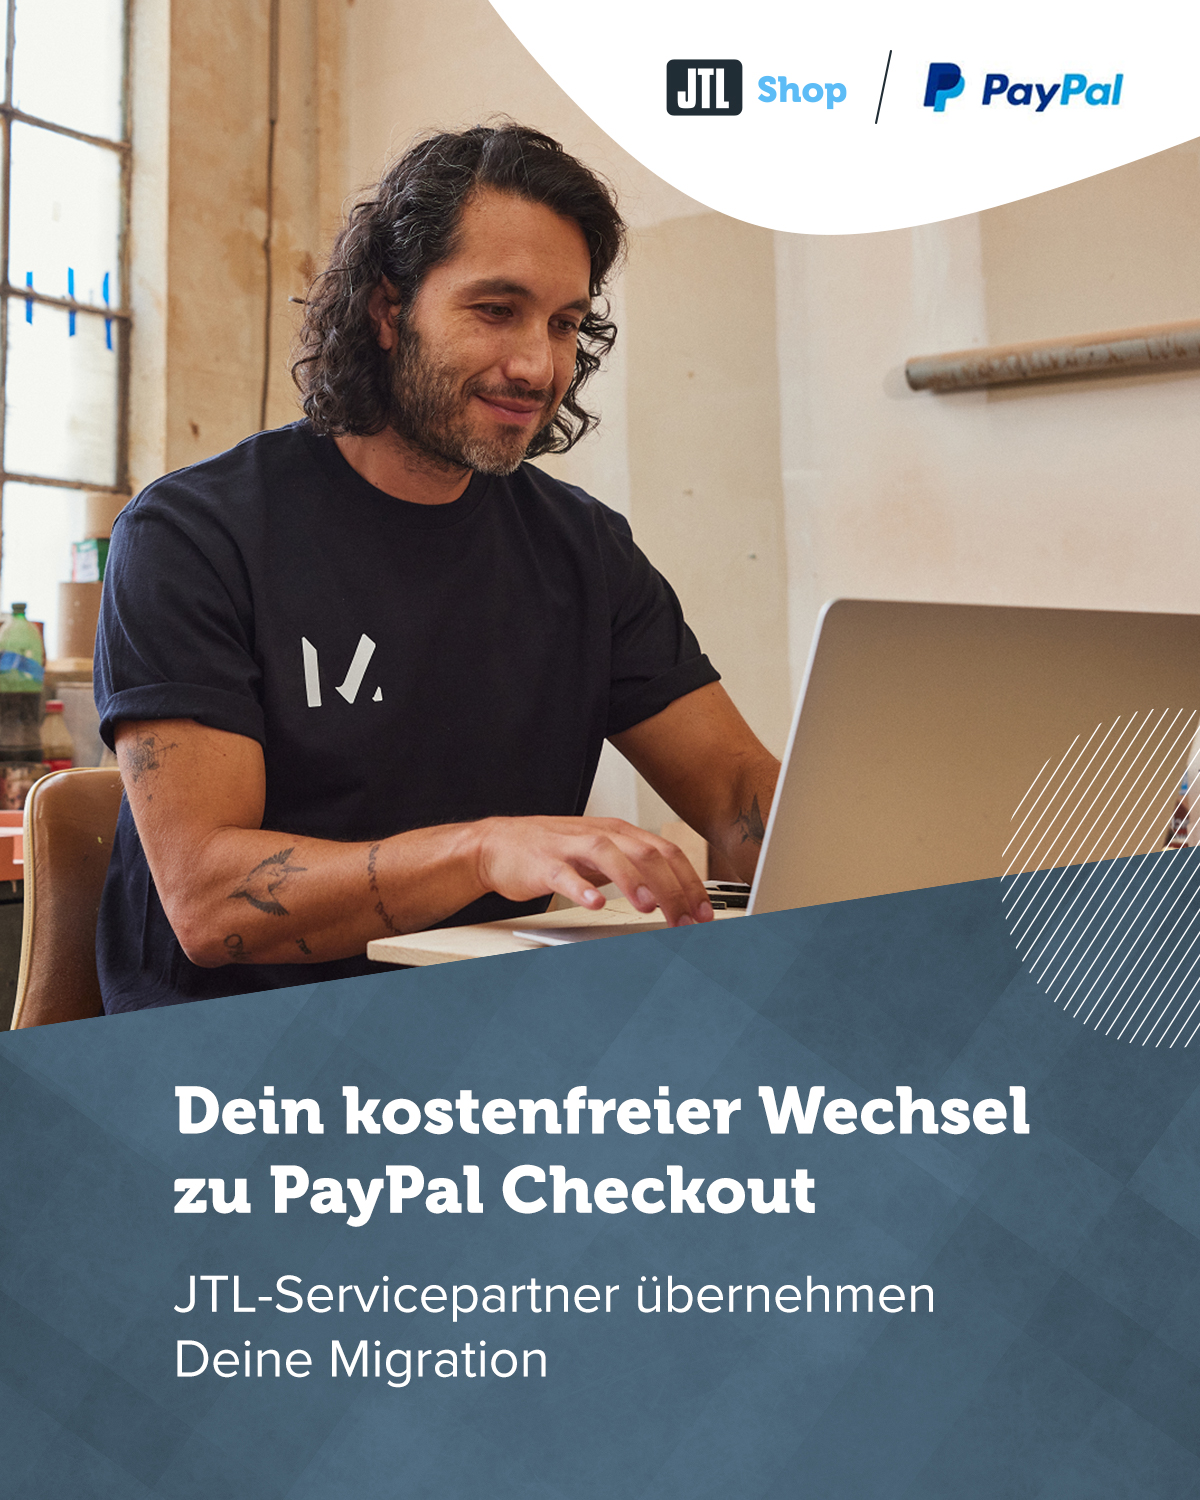 SALEPIX bietet kostenfreie Integration von PayPal-Checkout für JTL-Shop-Betreiber an